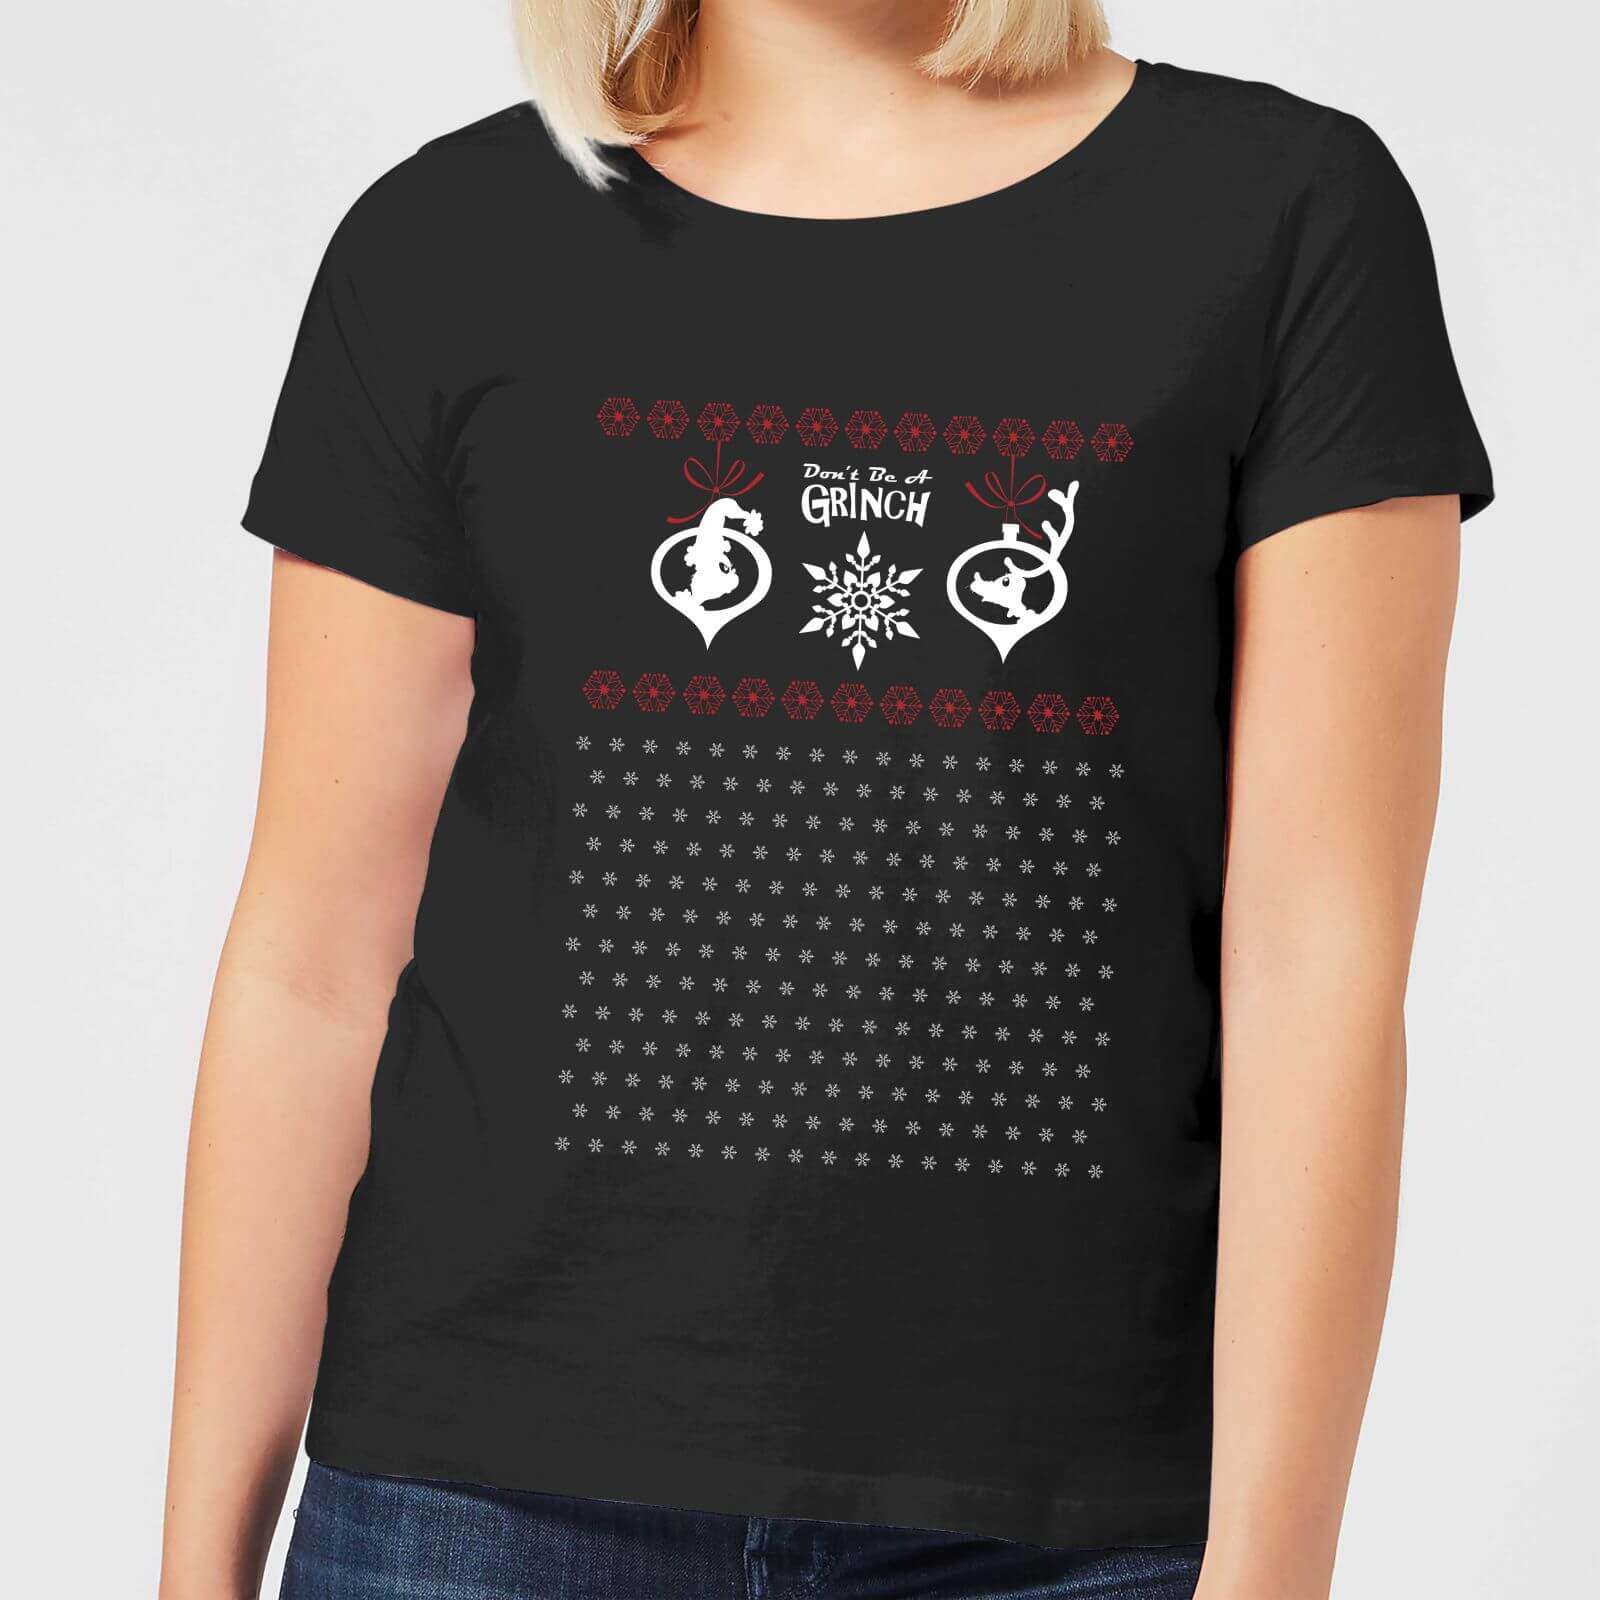 The Grinch Pattern Women's Christmas T-Shirt - Black - 4XL - Black